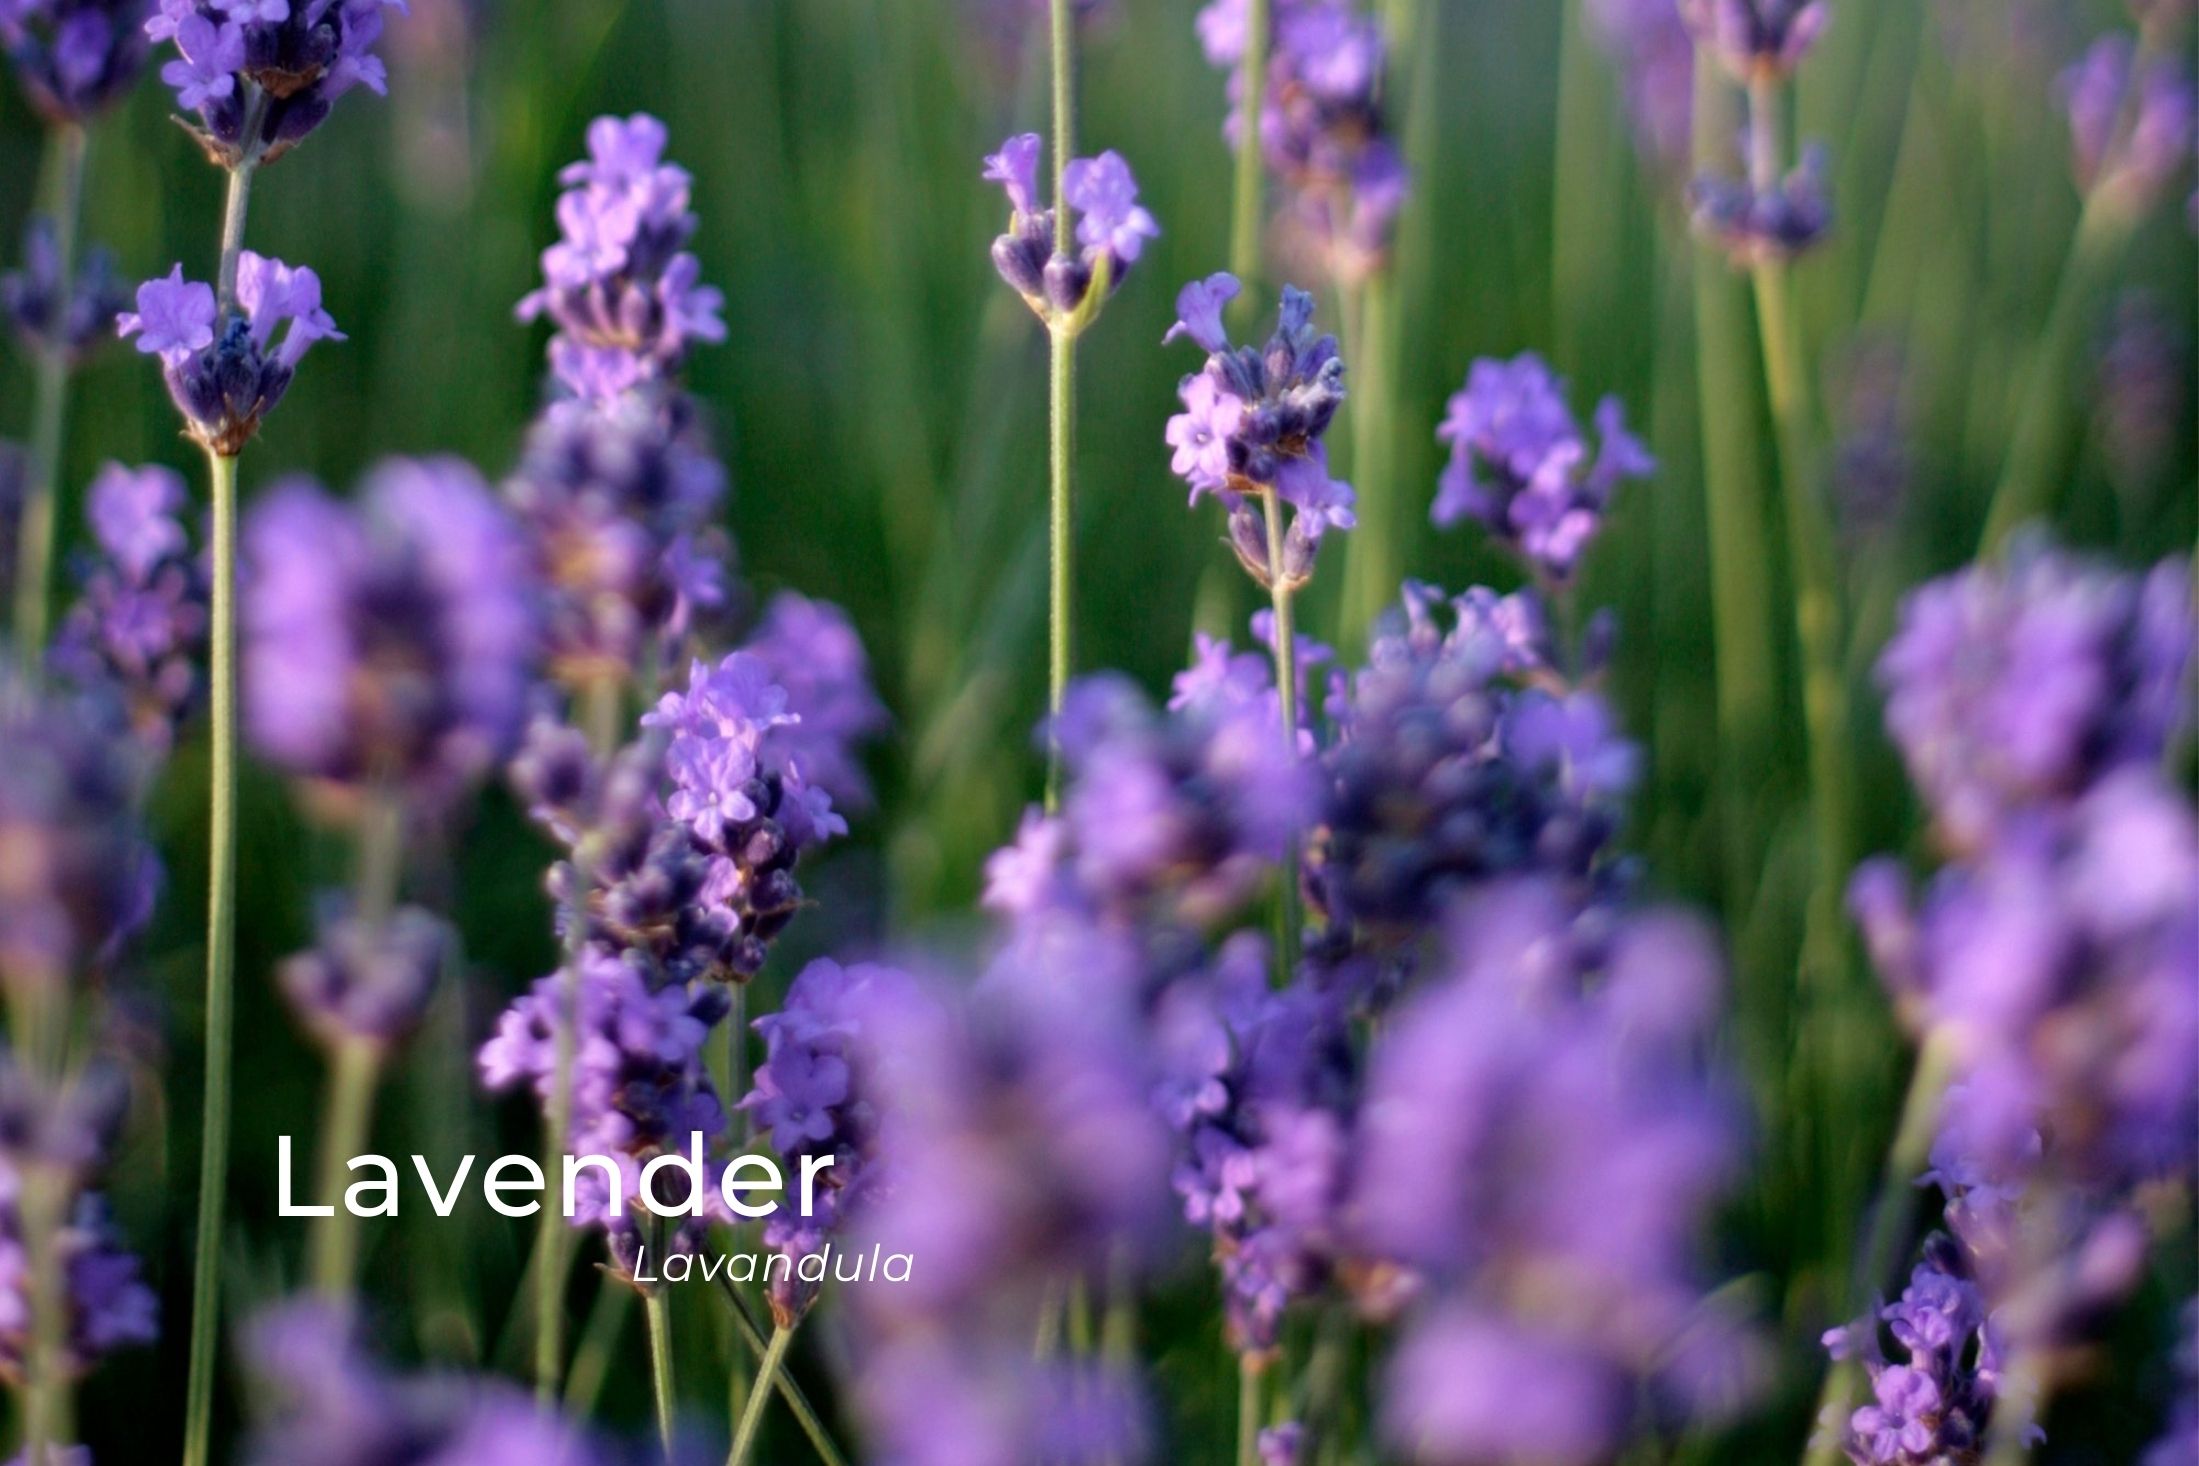 Beautiful Purple lavender flower in blossom in east lothian.